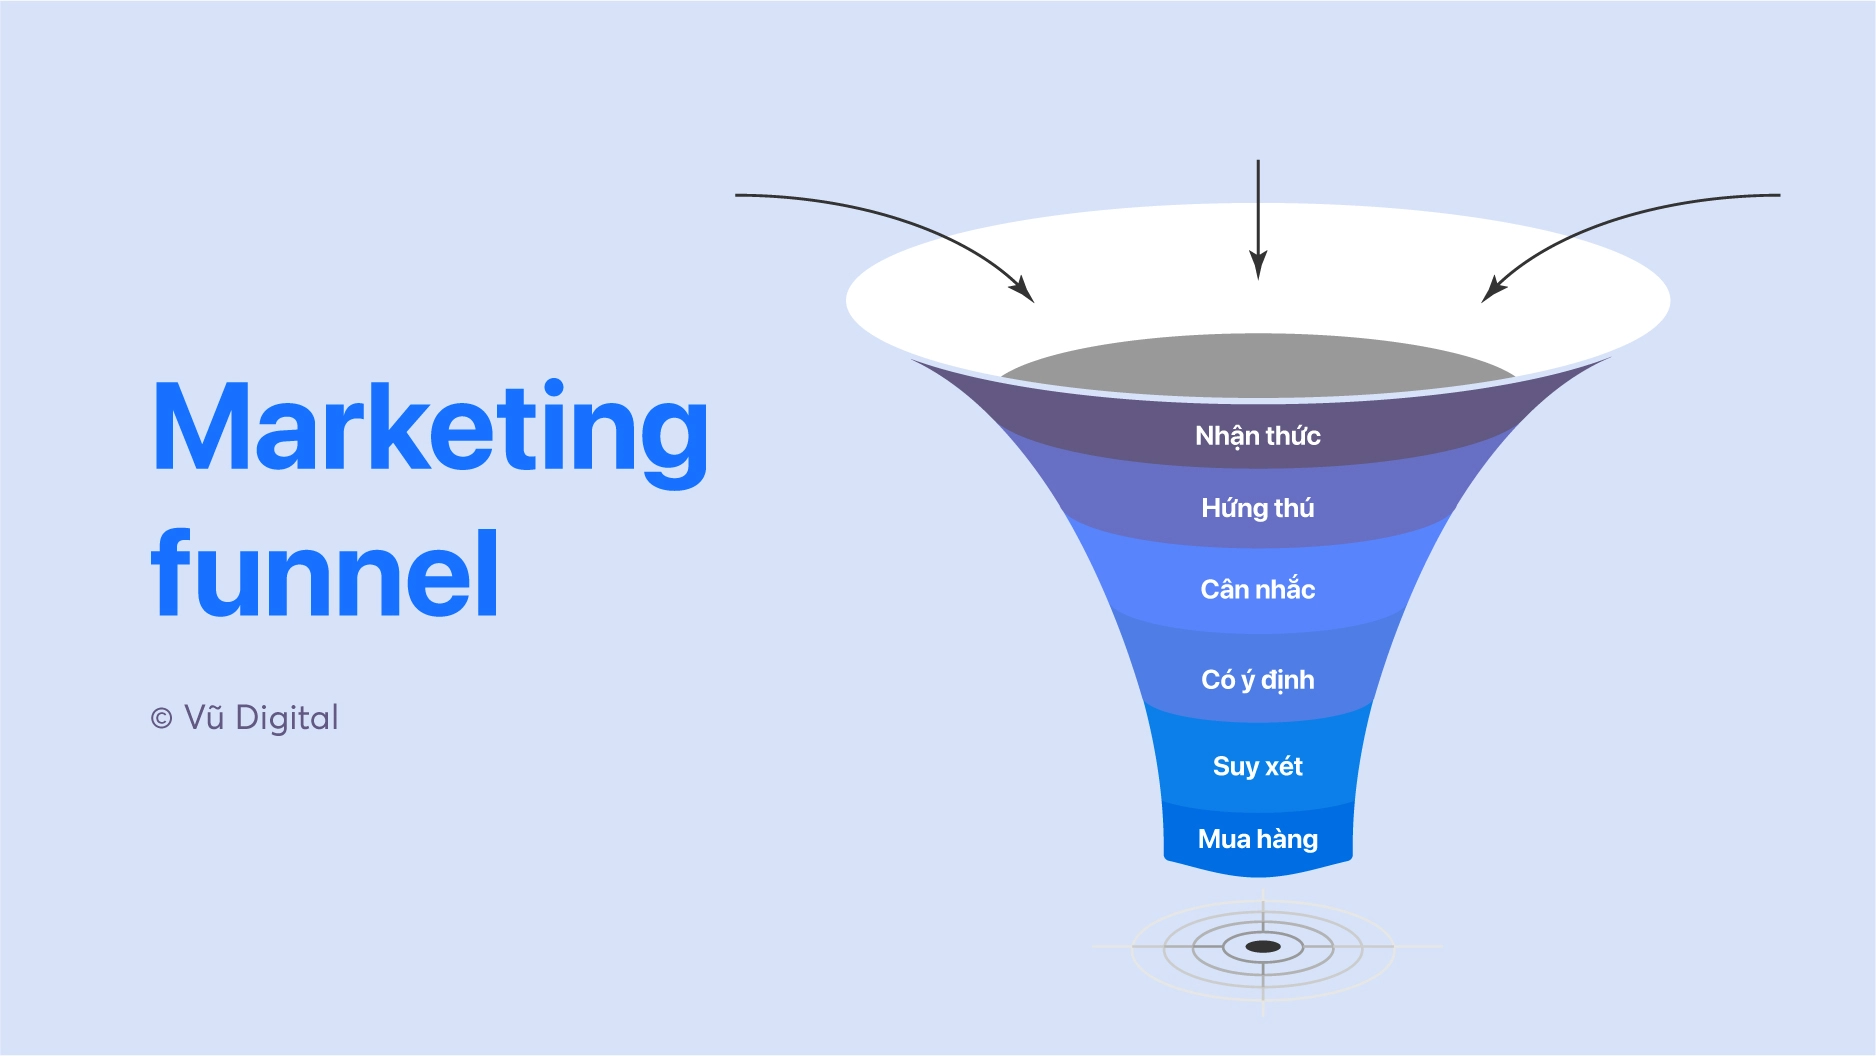 Hành trình khách hàng 6 giai đoạn trong Marketing funnel